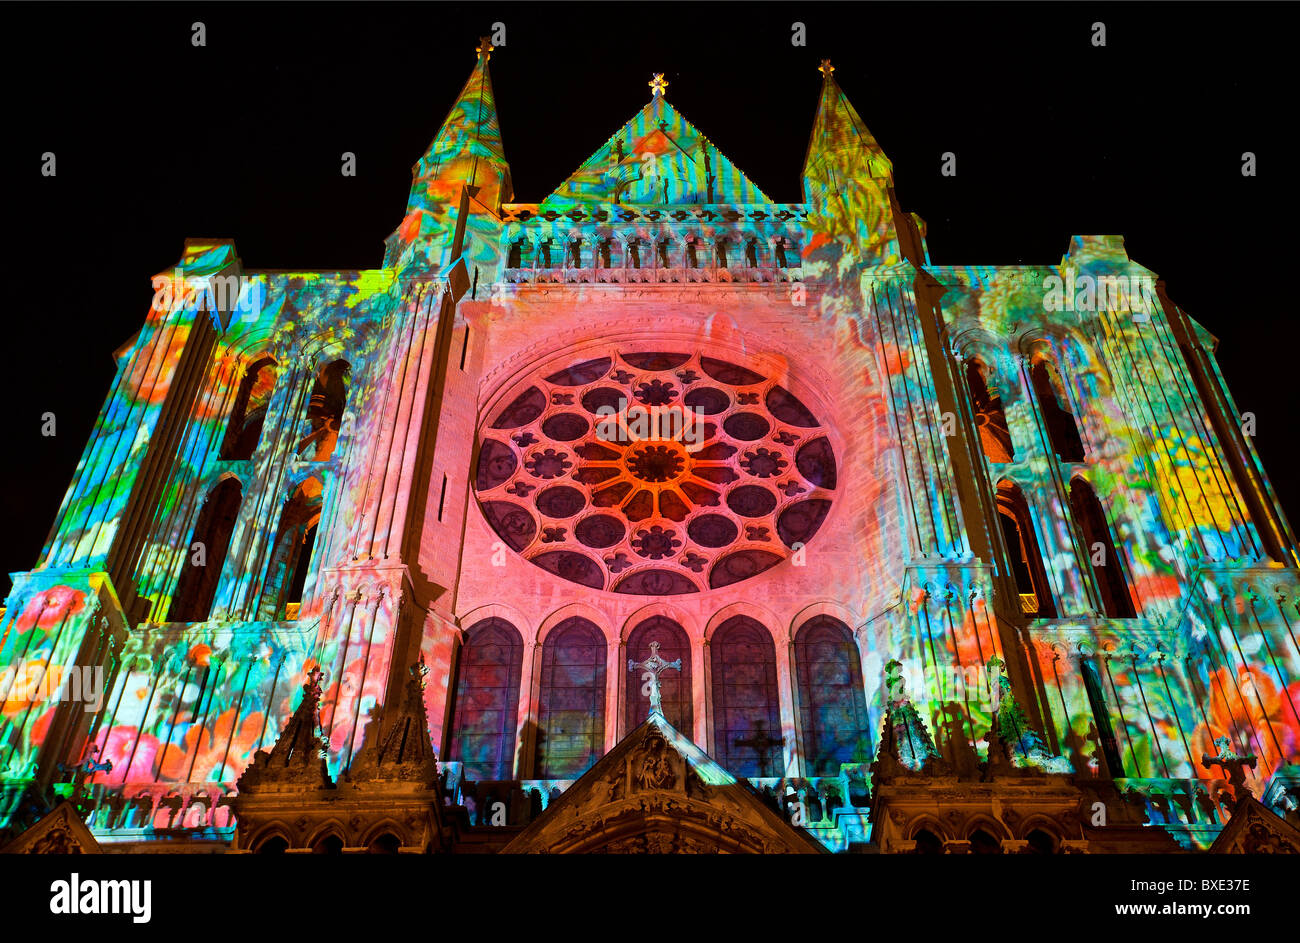 La cattedrale di Chartres illuminata di notte Foto Stock